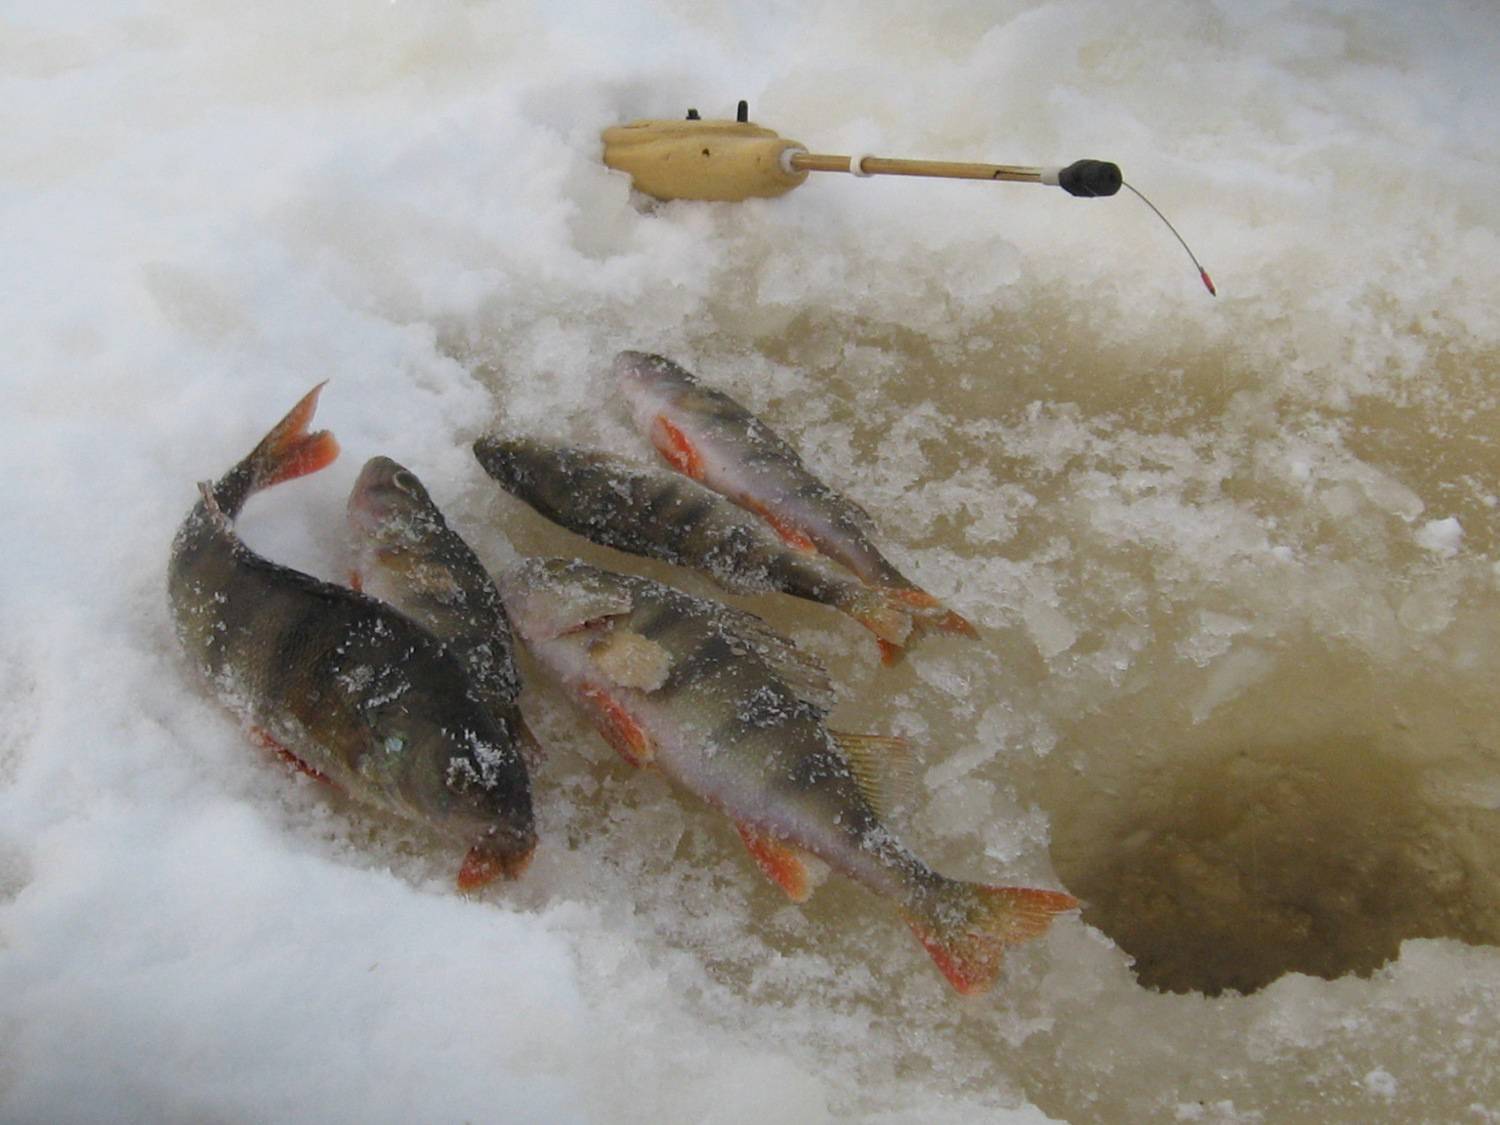 Рыбалка по первому льду - на кого и как?